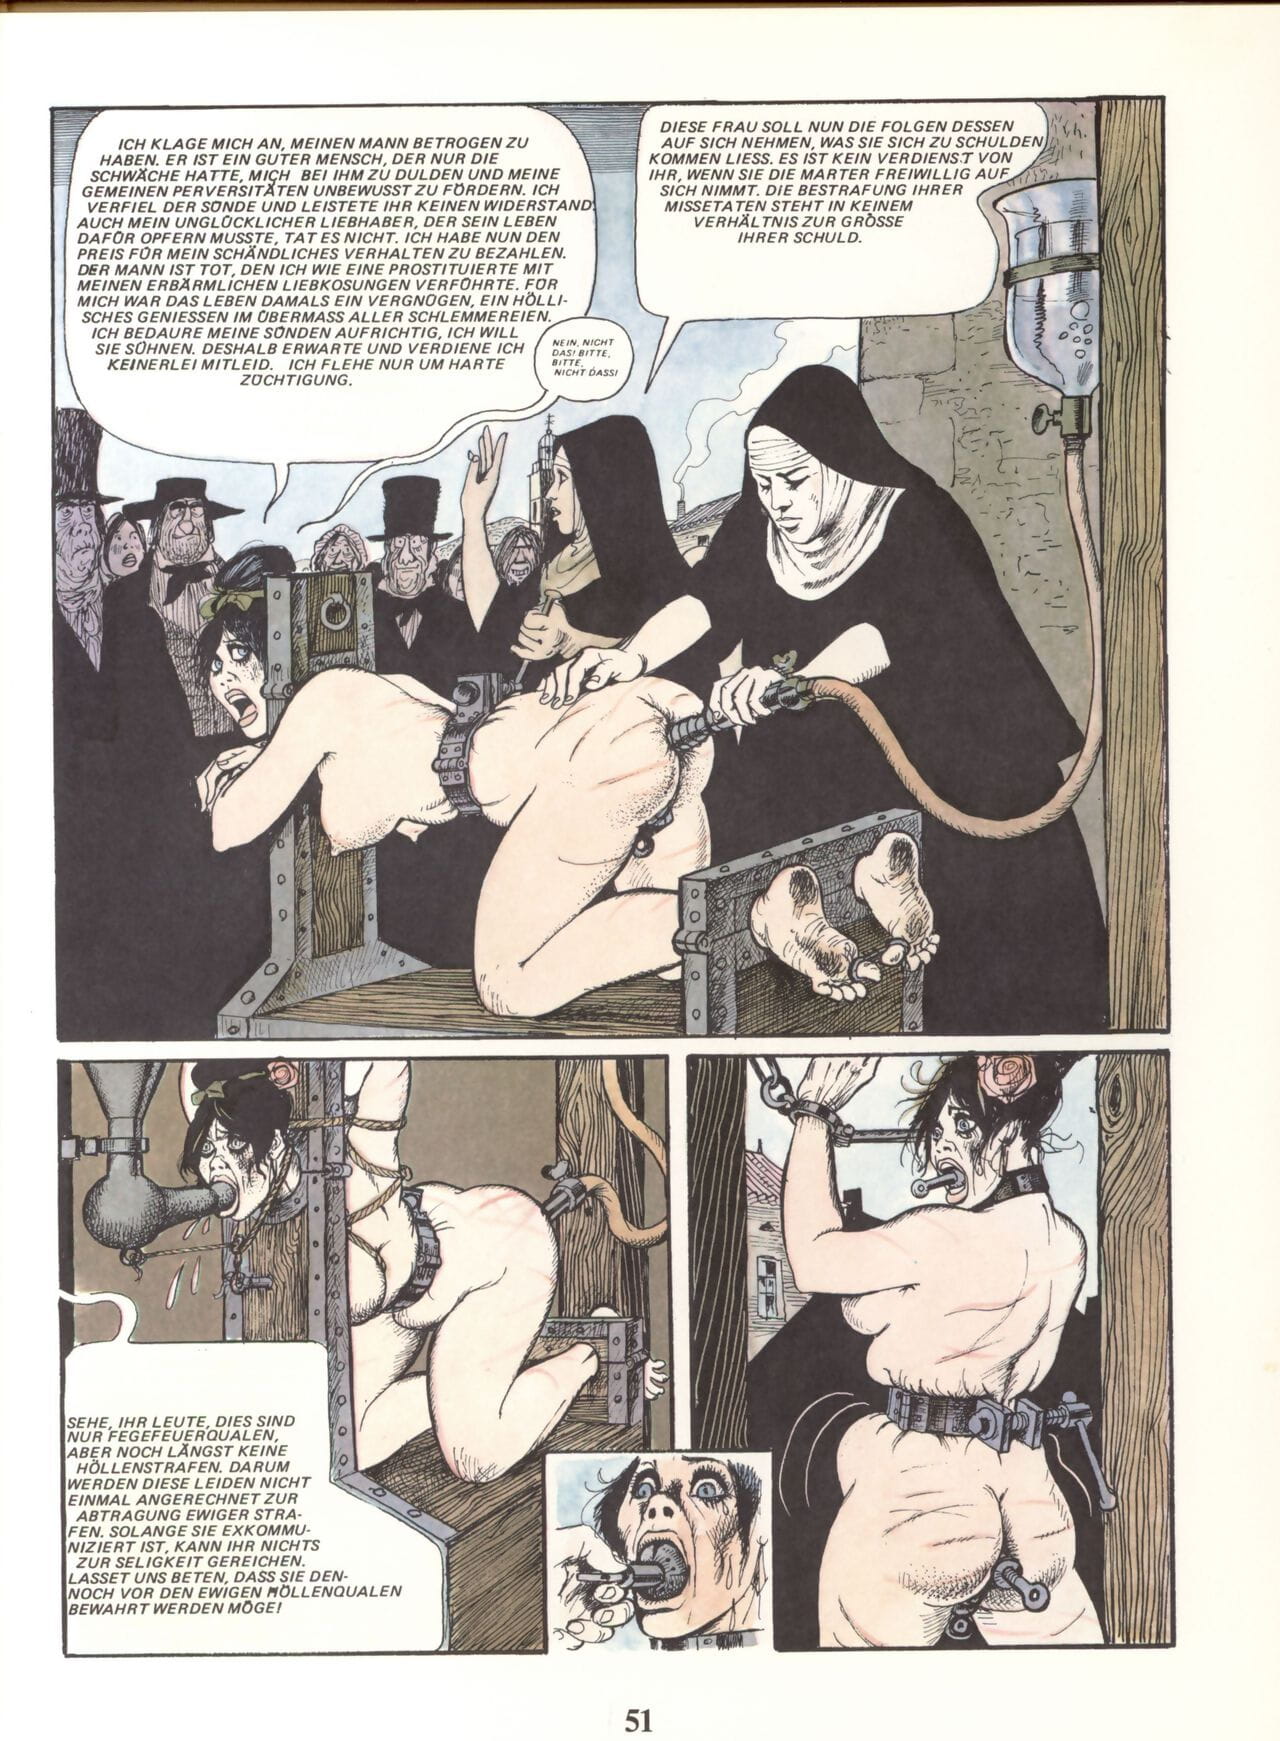 Marie Gabrielle de Saint eutropo #02 parte 3 page 1